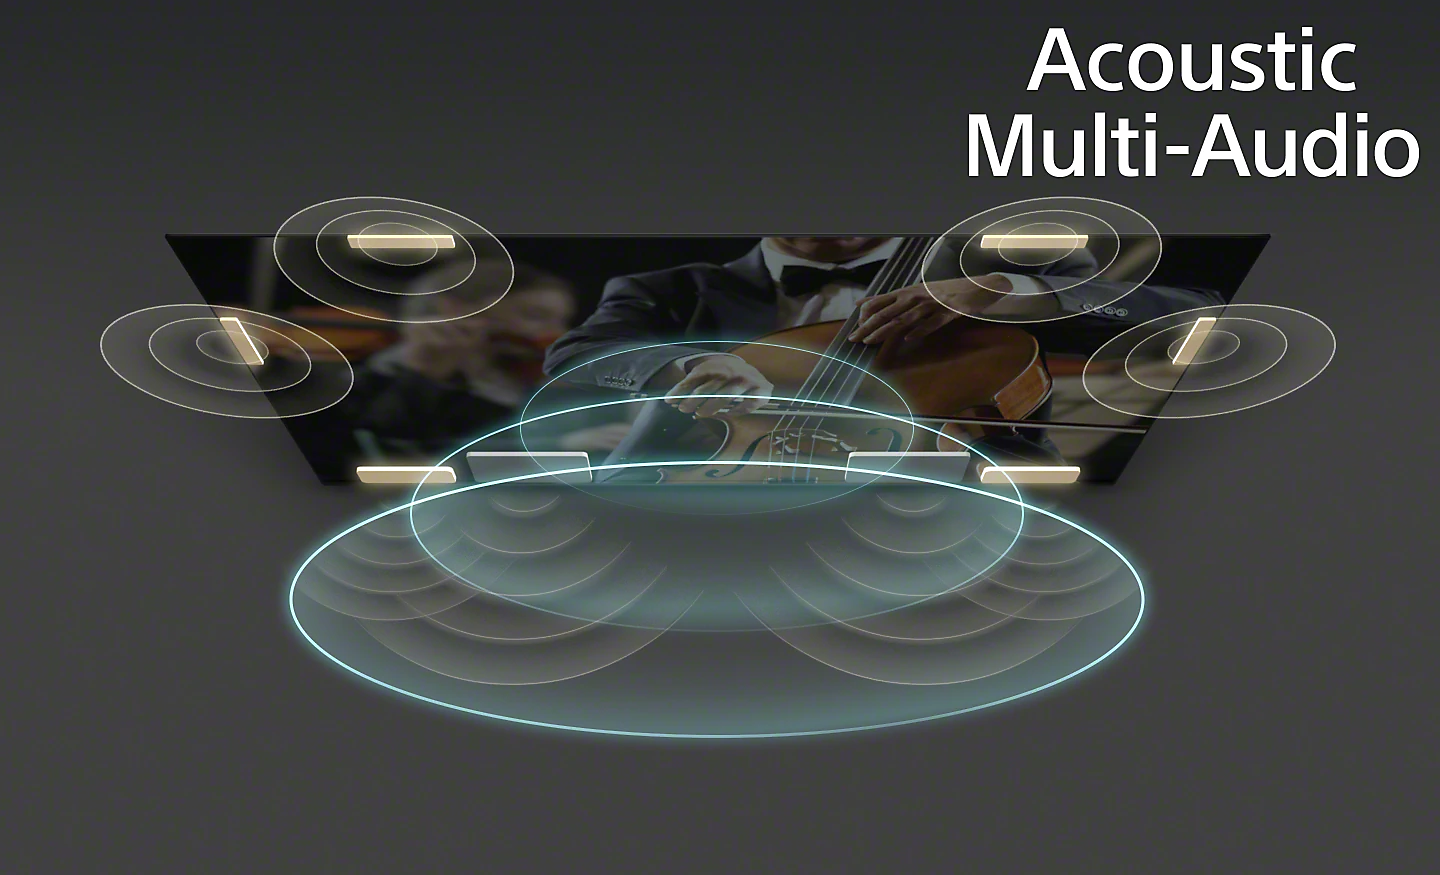 Image d'ondes acoustiques émises par le téléviseur avec la technologie Acoustic Multi-Audio™